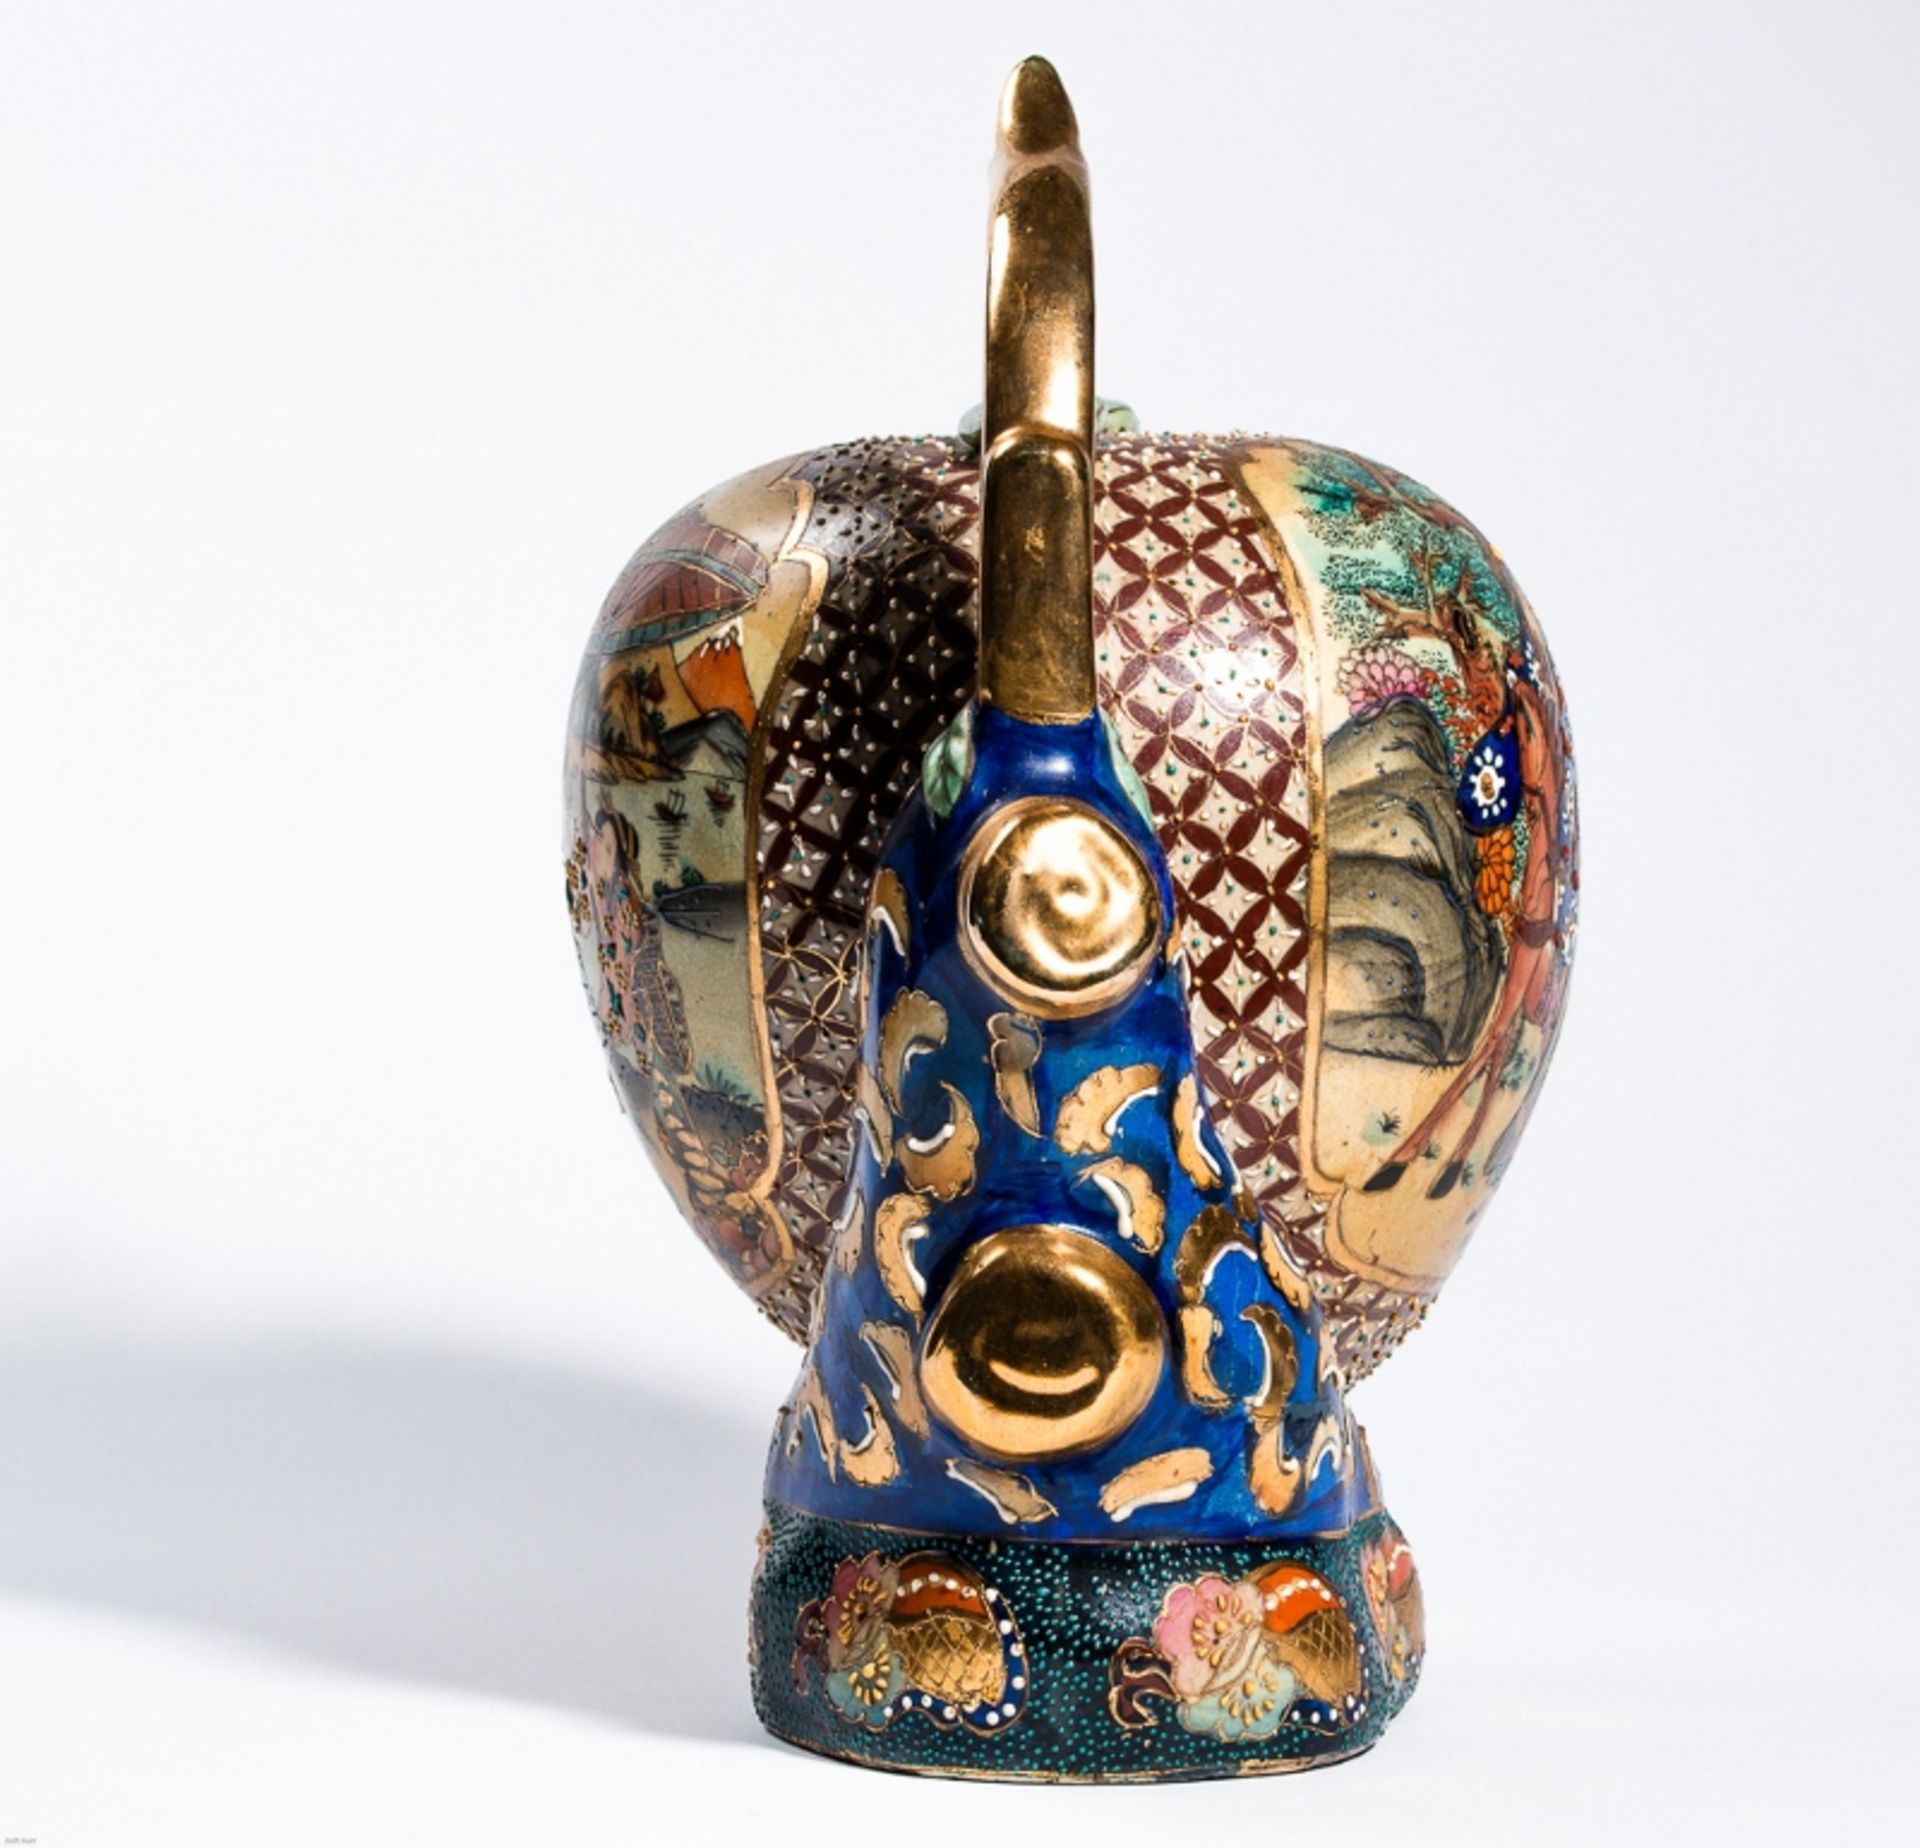 GROSSER LANGLEBENS-PFIRSICH MIT GOTTHEIT
In der Art der japan. Satsuma-Keramik mit Gold. ChinaEine - Bild 4 aus 8